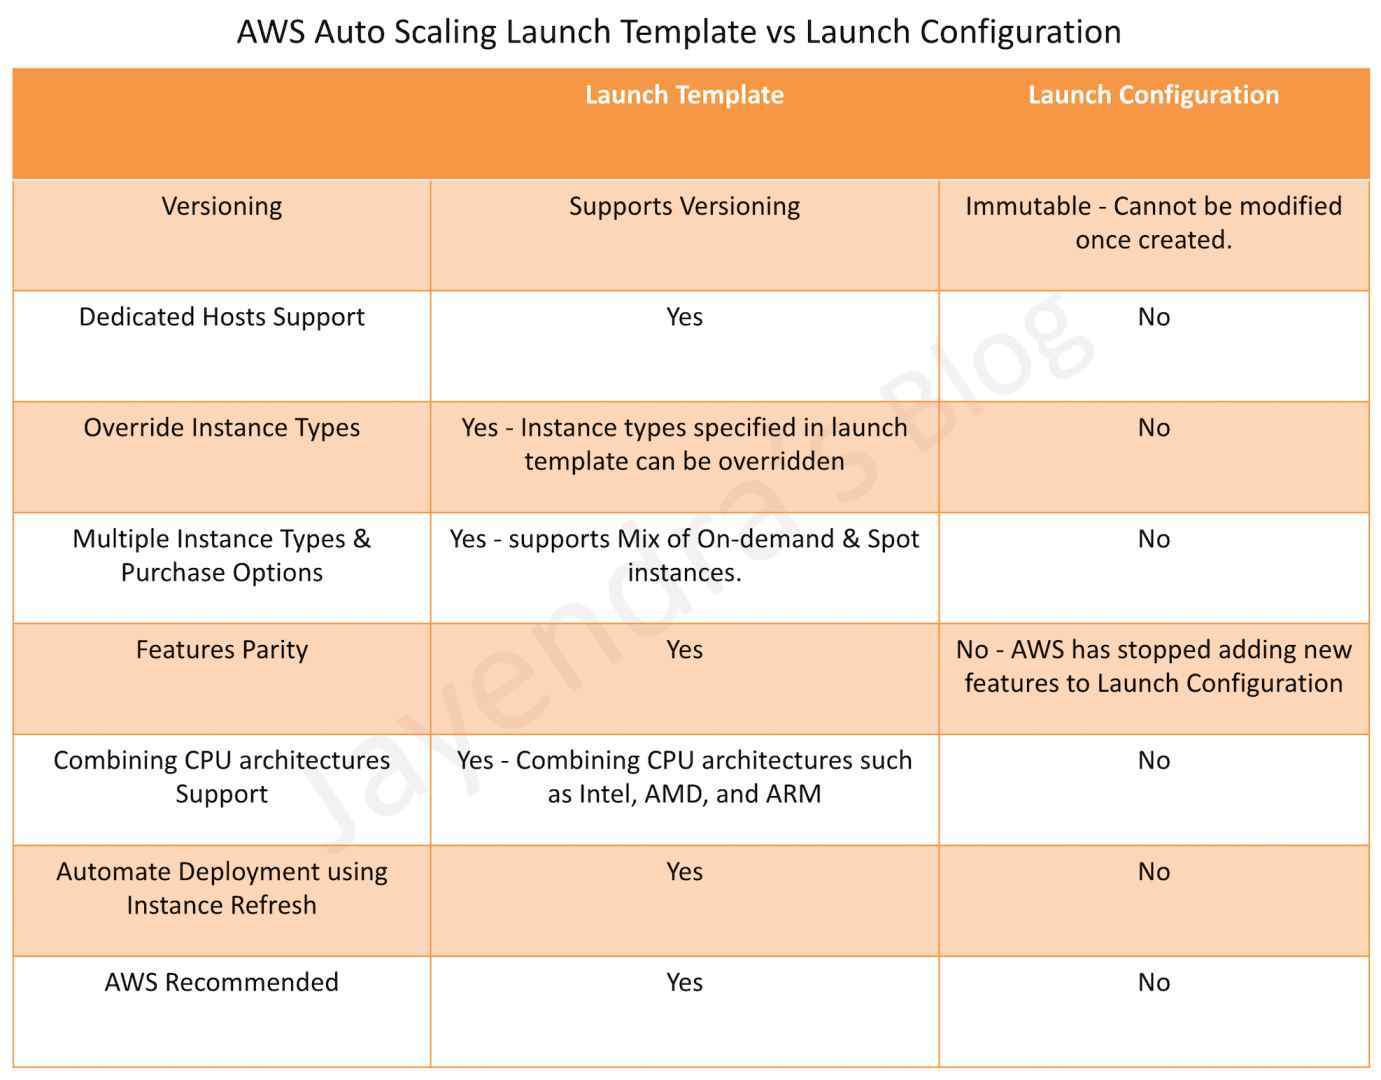 launch-configuration-vs-launch-template